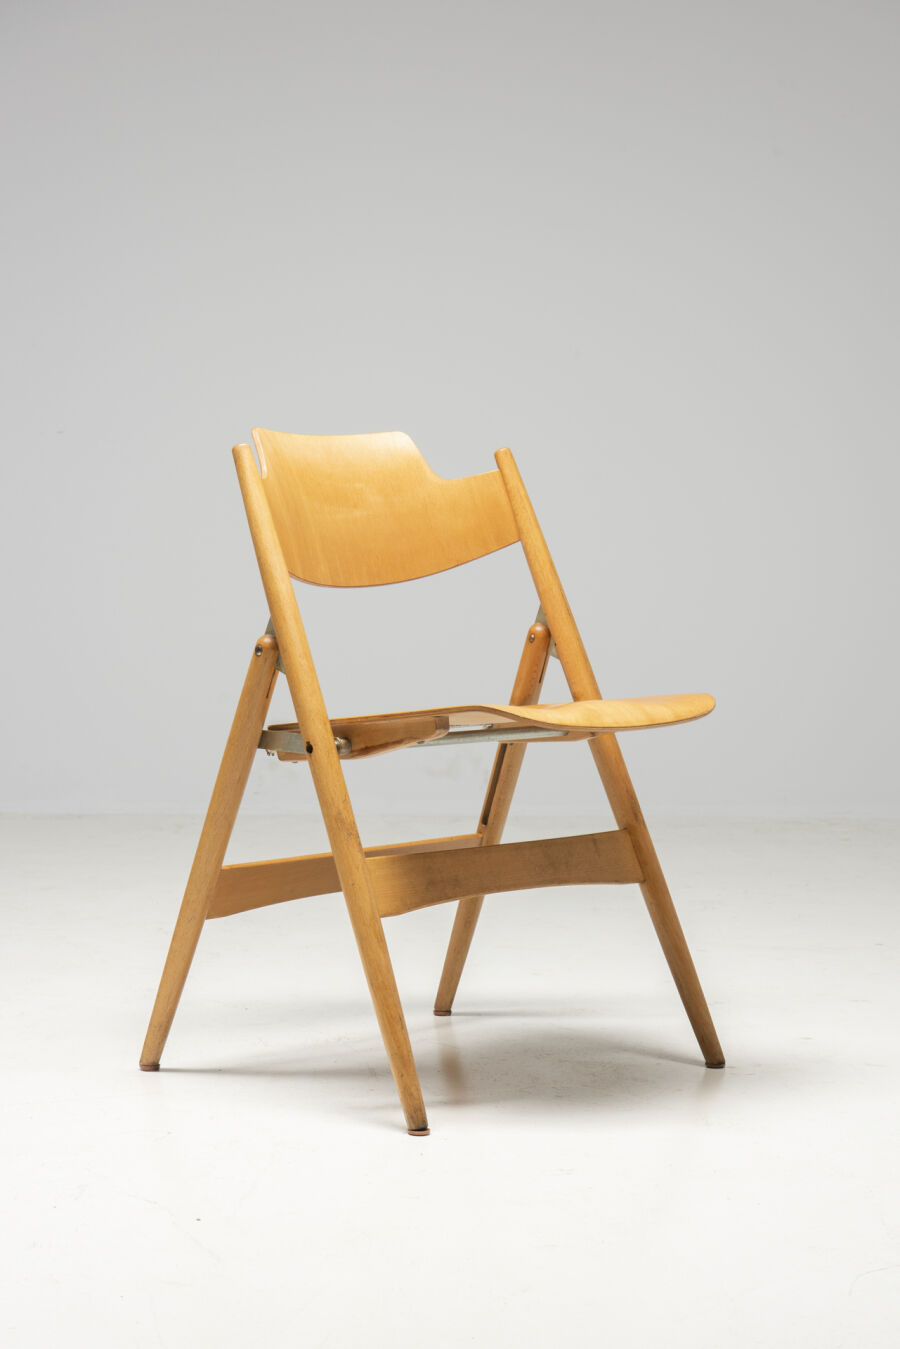 2950egon-eiermannwilde-spieth6-se18-folding-chairs-9